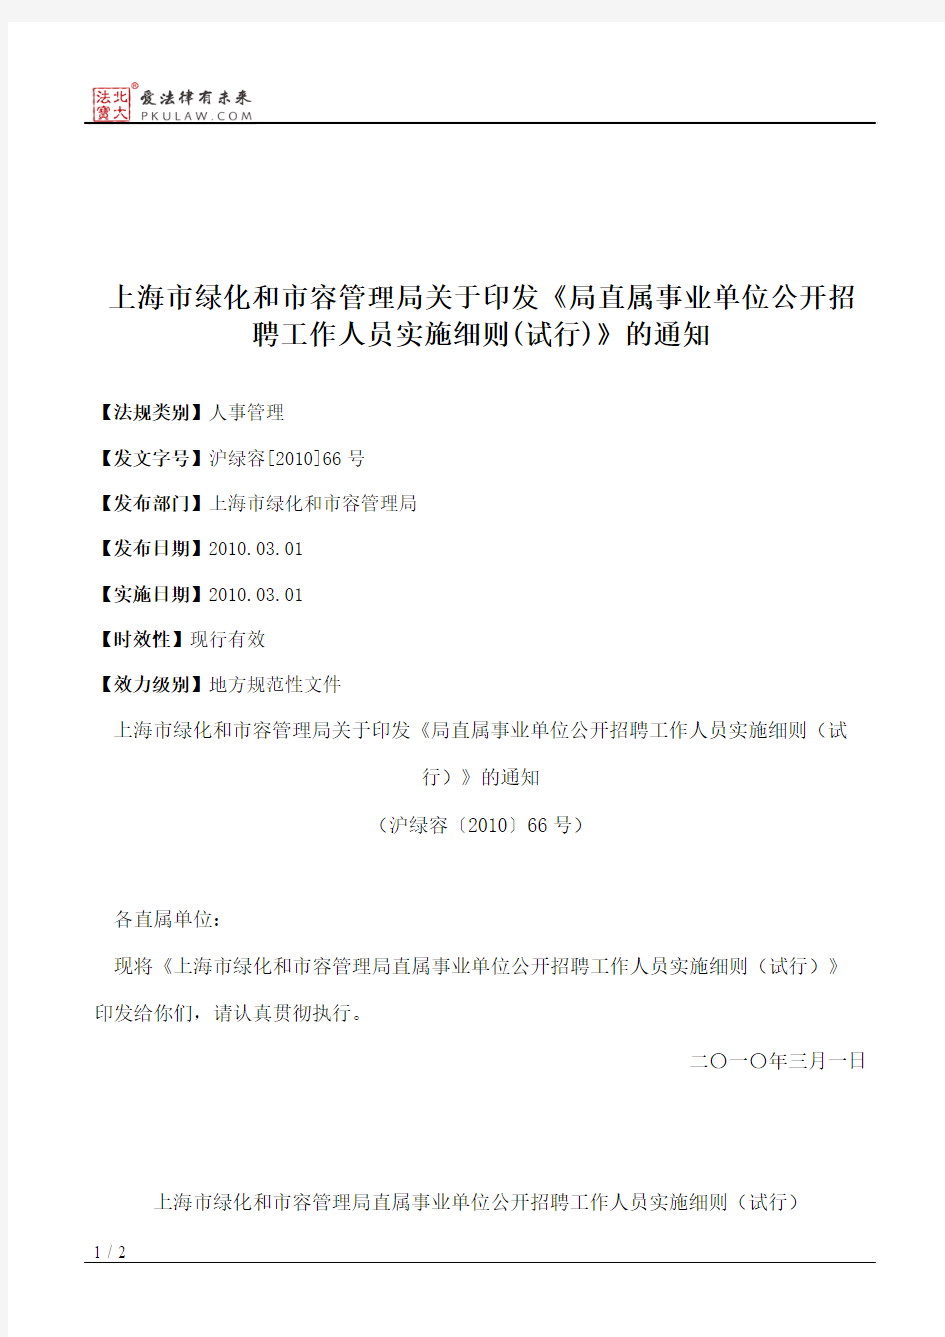 上海市绿化和市容管理局关于印发《局直属事业单位公开招聘工作人